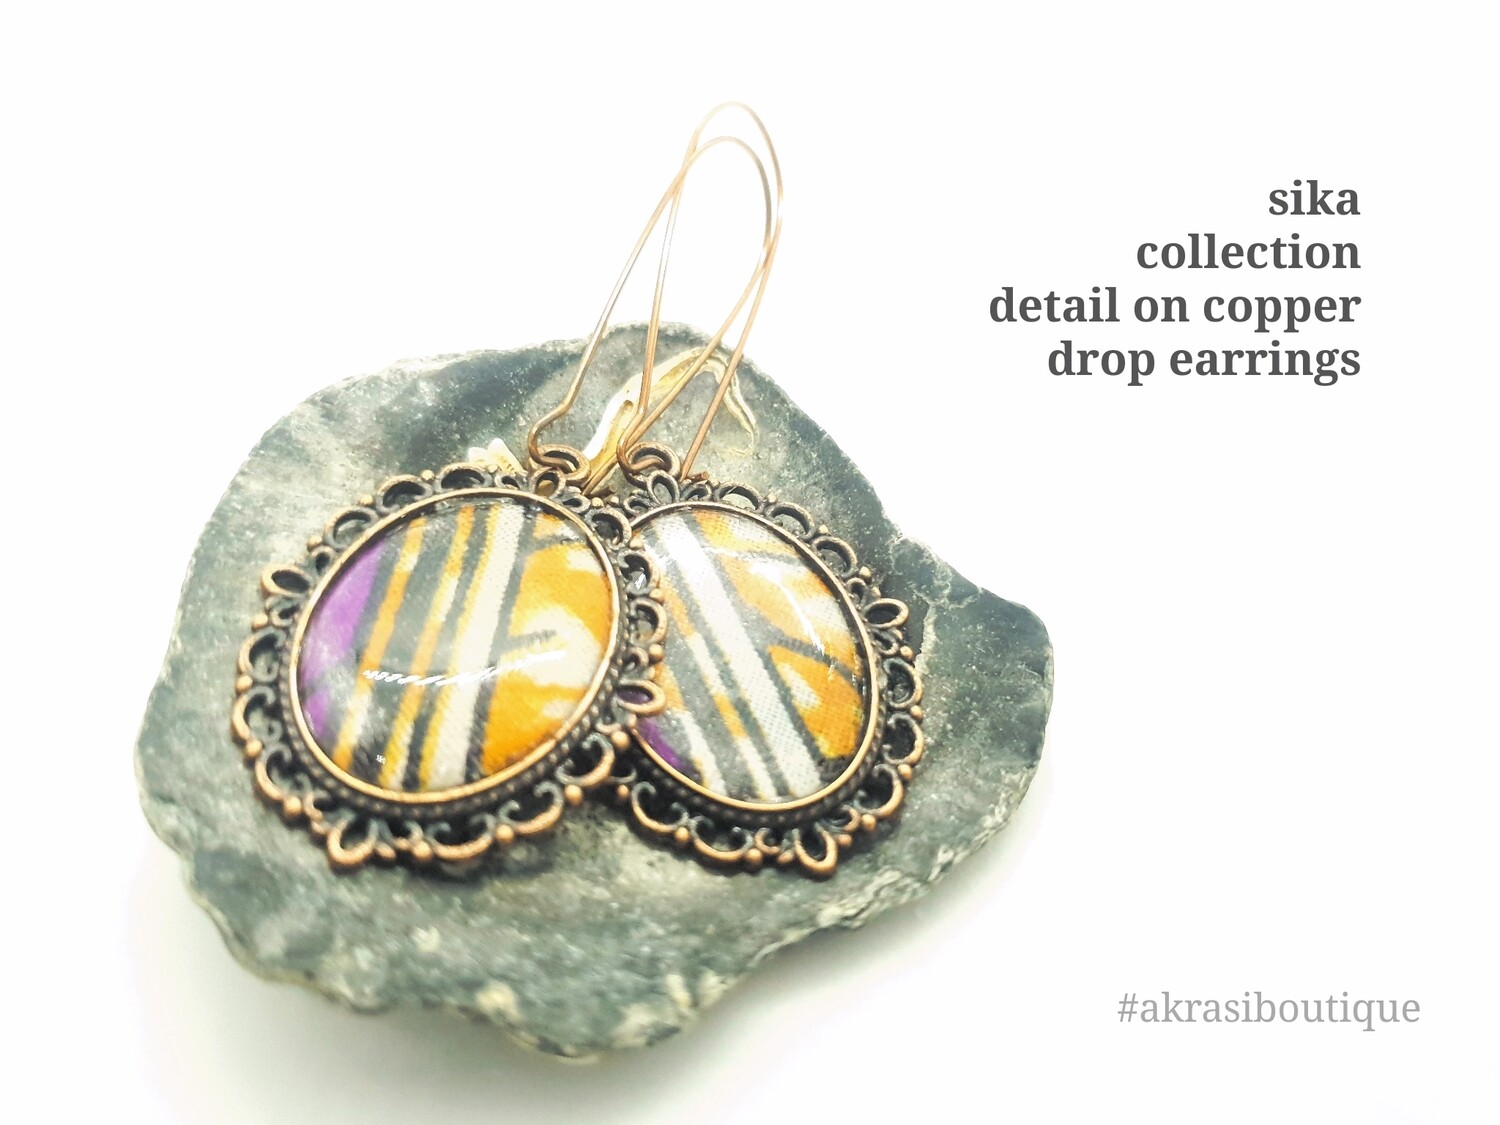 Oval Ankara copper drop earrings sealed in resin